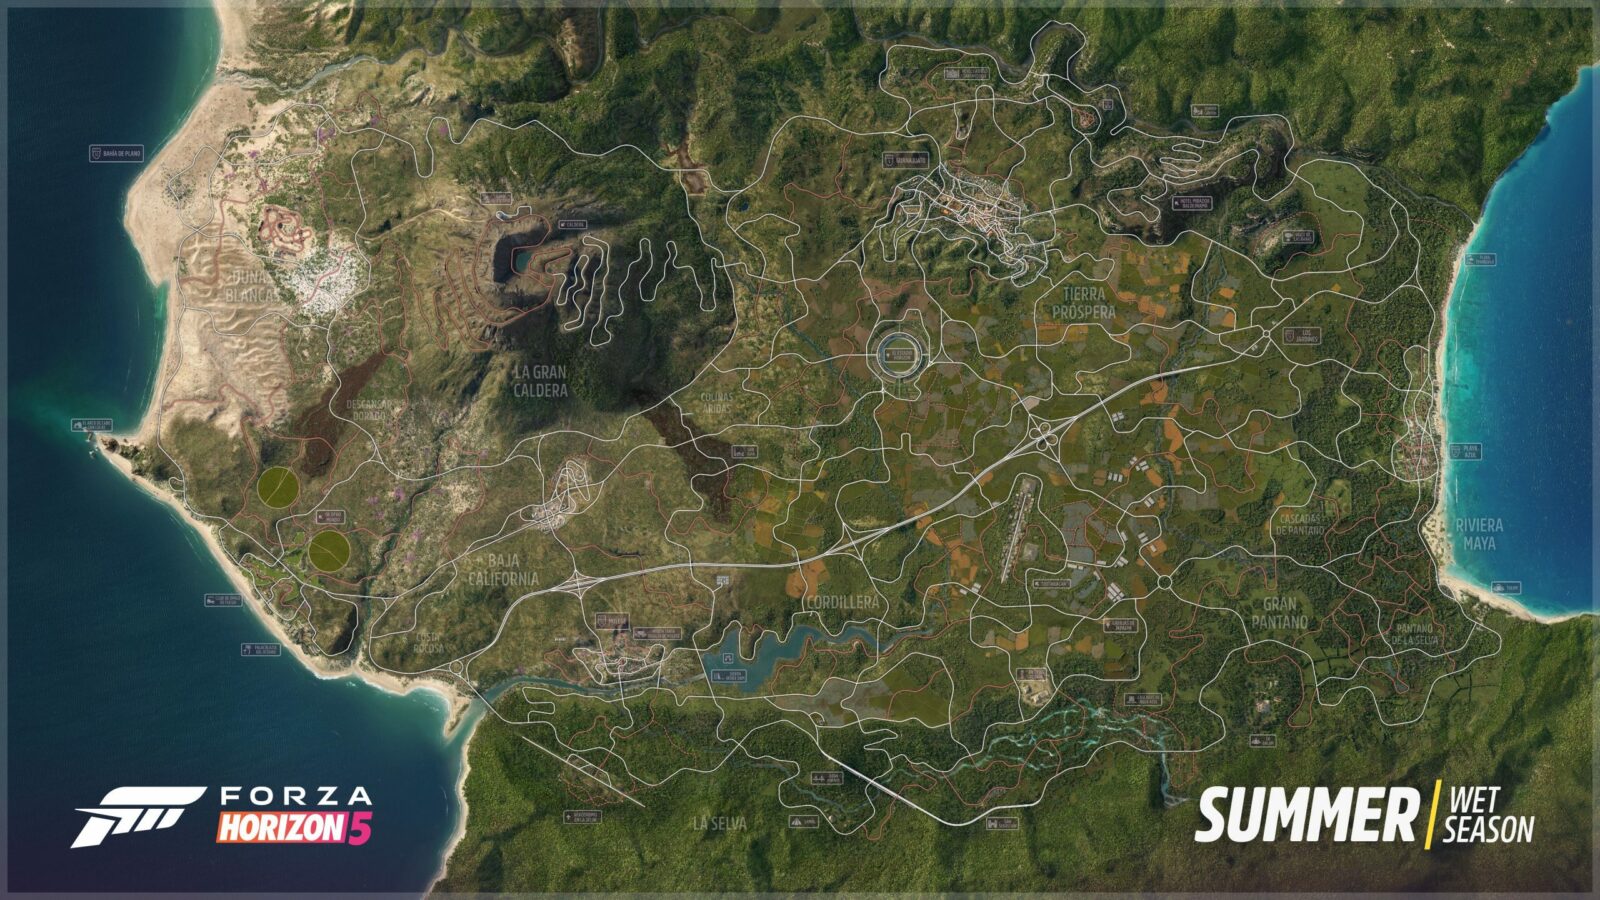 Gli sviluppatori di Forza Horizon 5 condividono la mappa di gioco online